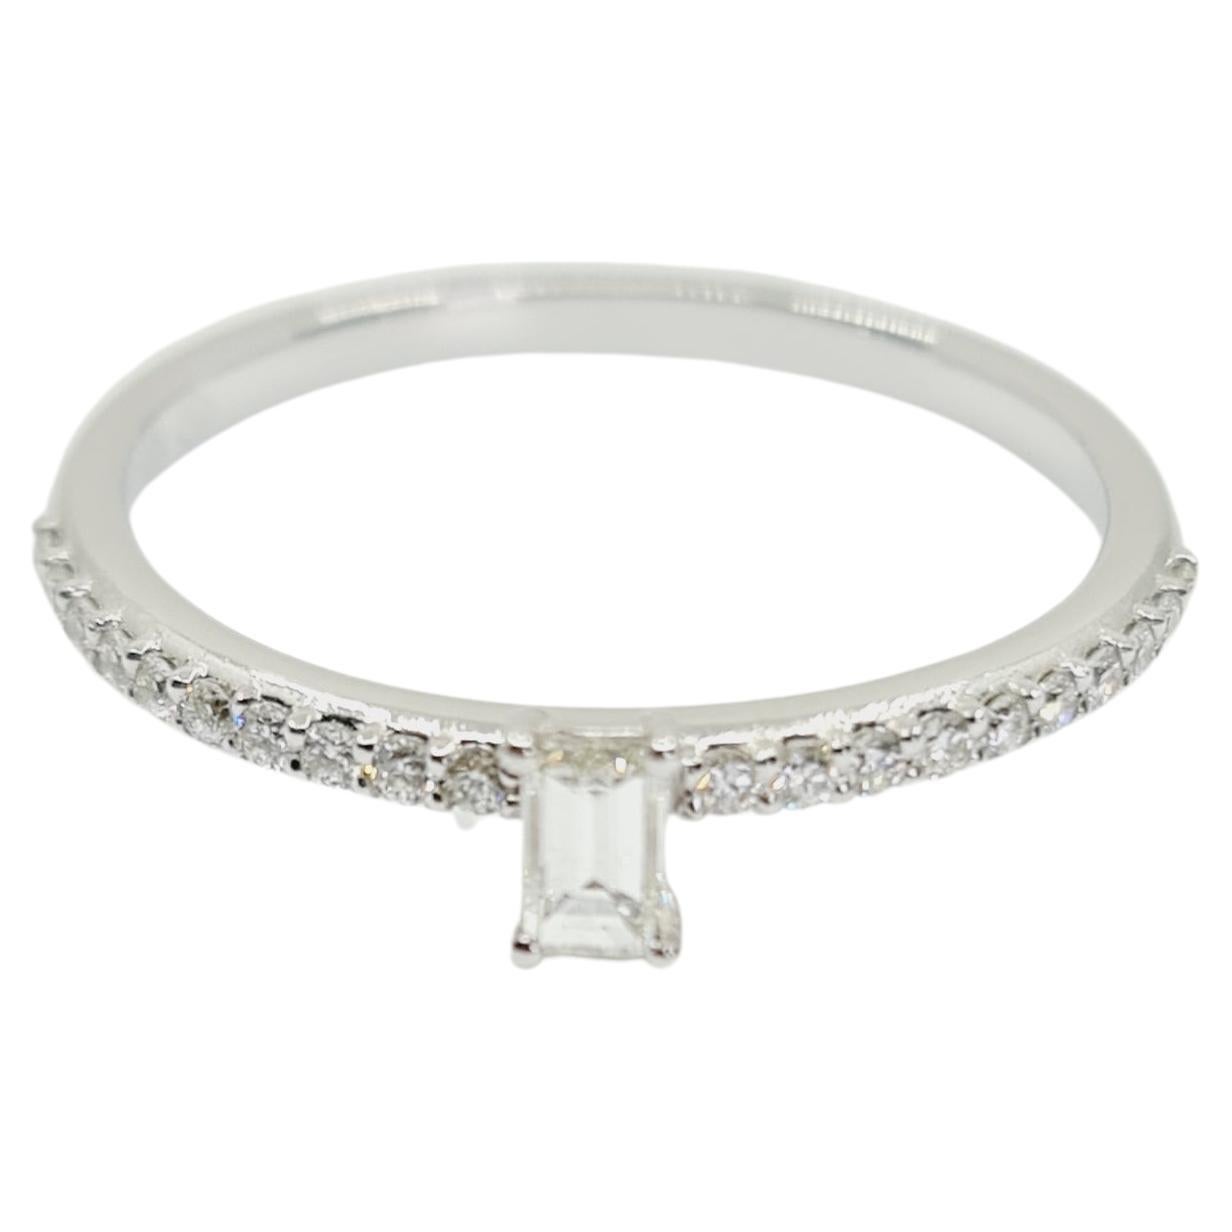 0.32carat Diamond Ring F-G/VS 18k White Gold, Emerald Cut Brilliant Cut Diamonds For Sale